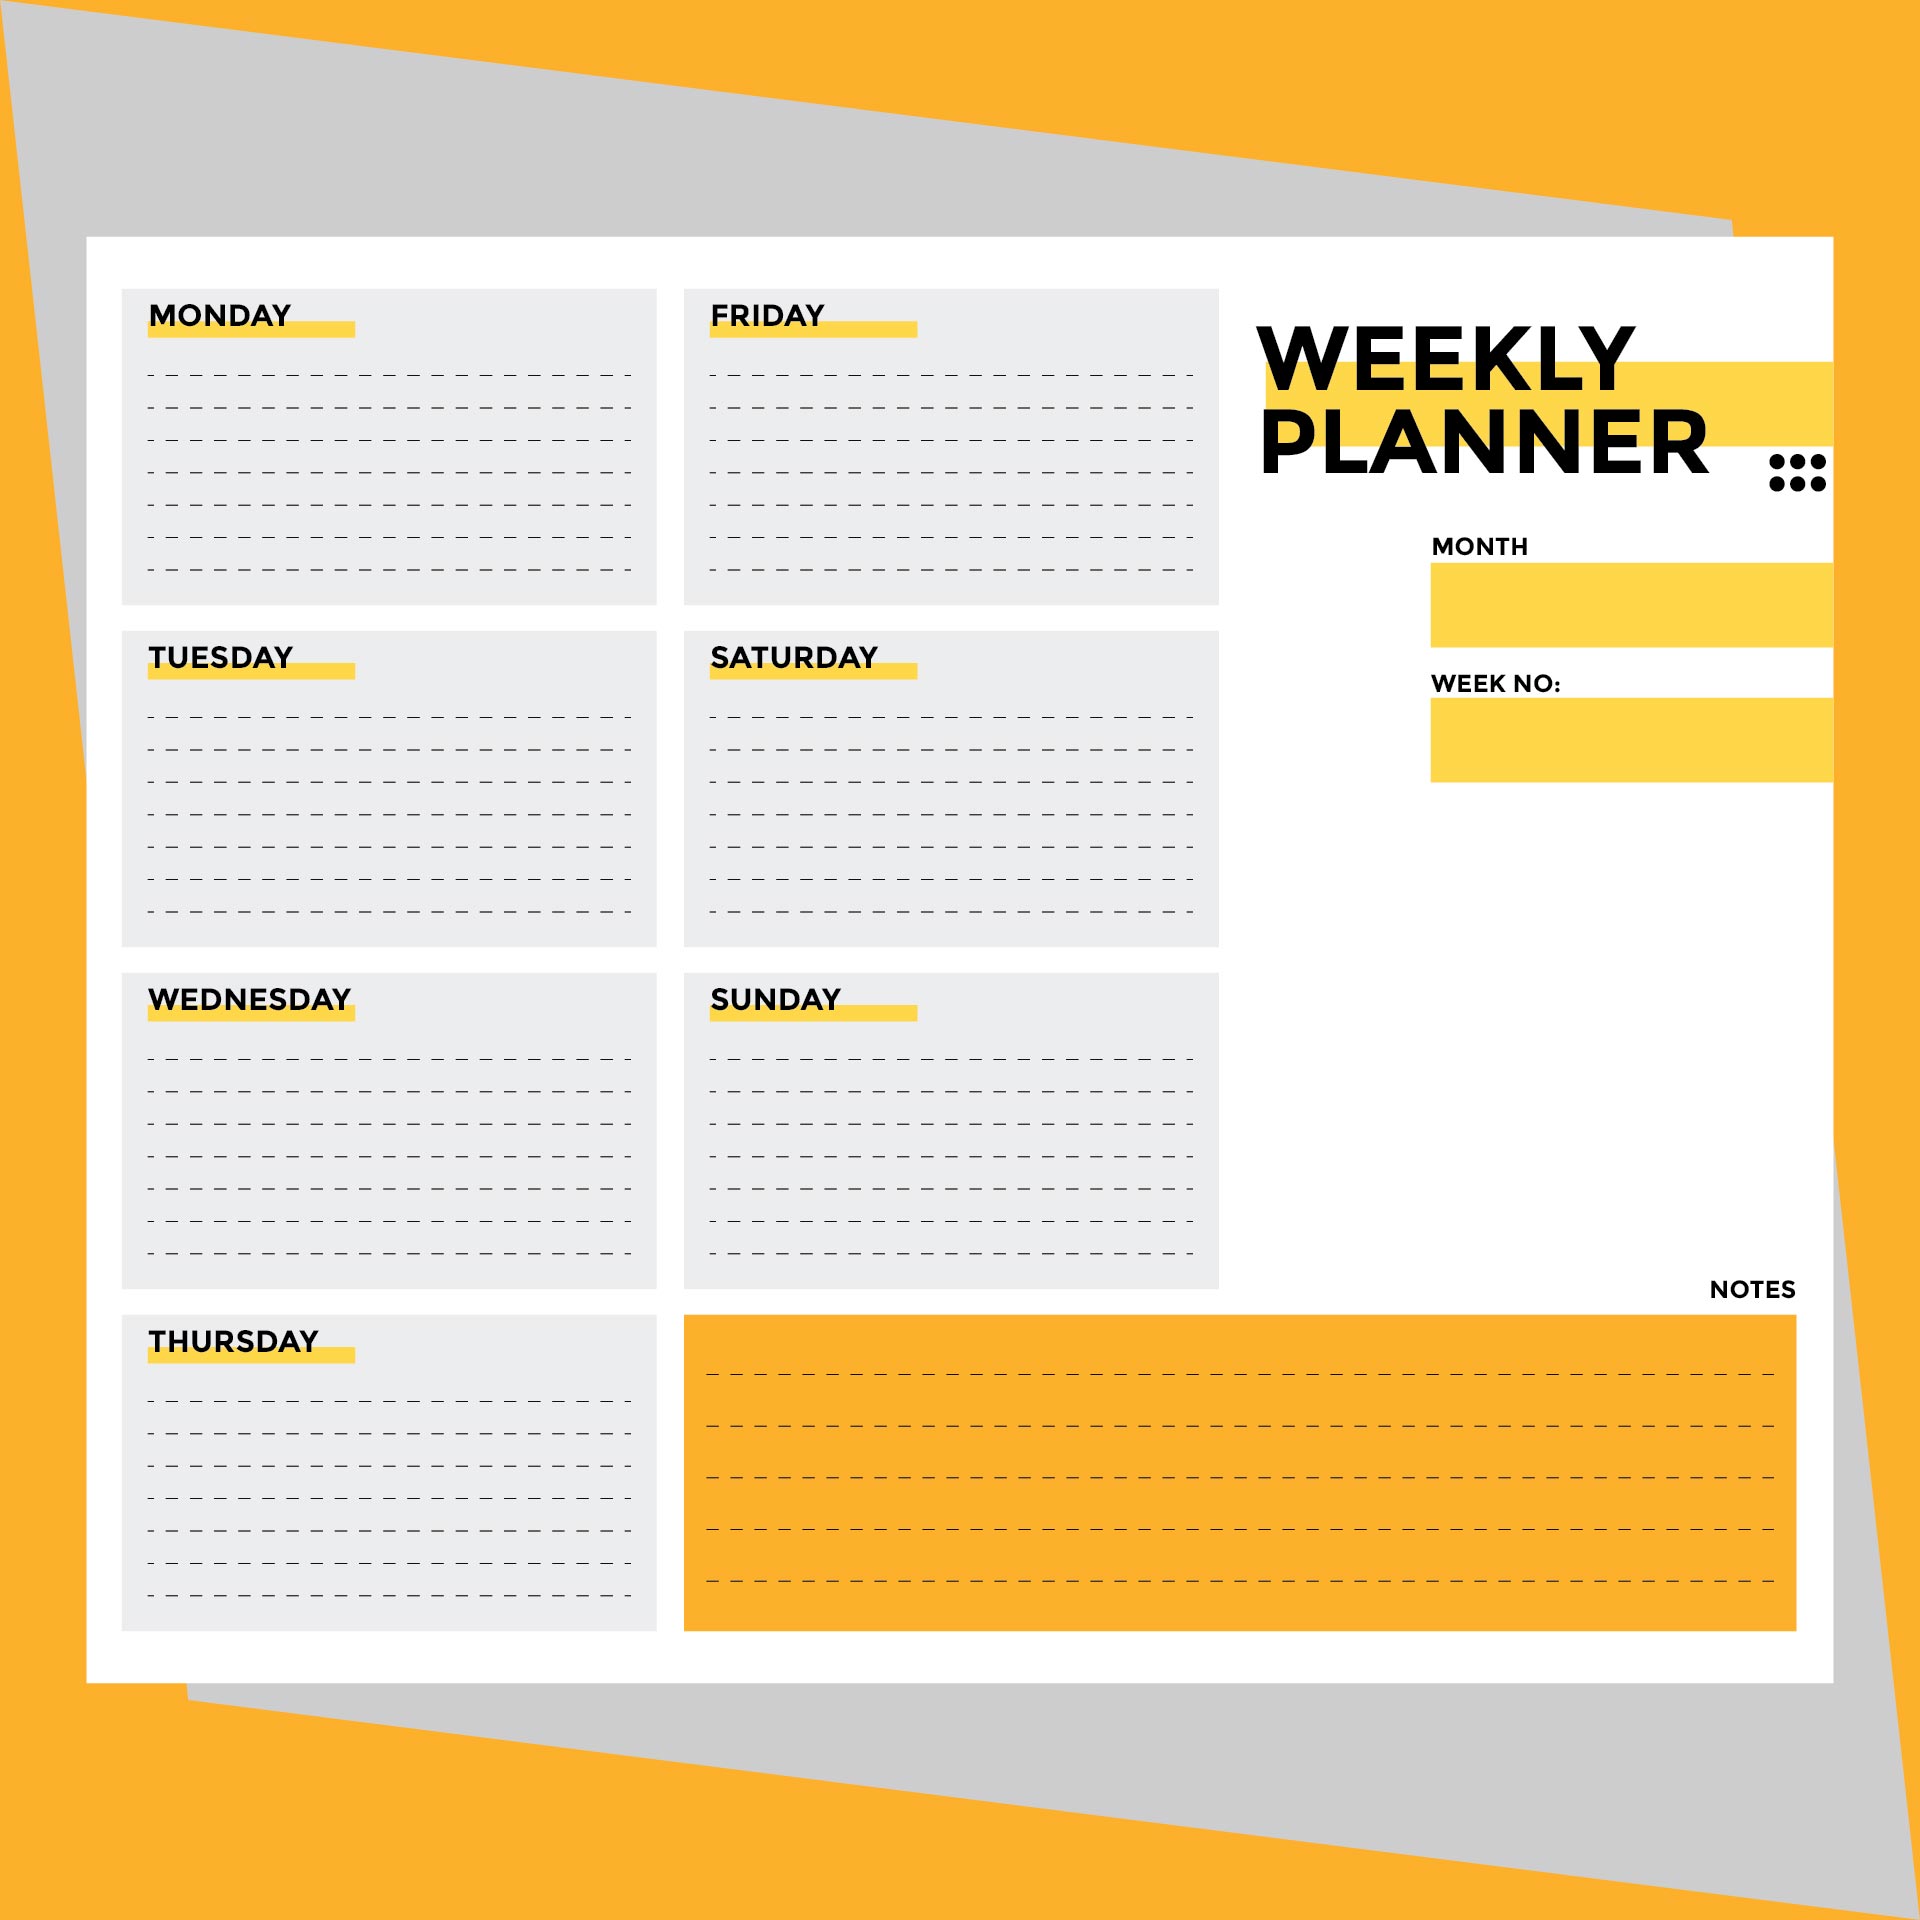 9 Best Images Of Weekly Planner Printable PDF Weekly Planner Template 